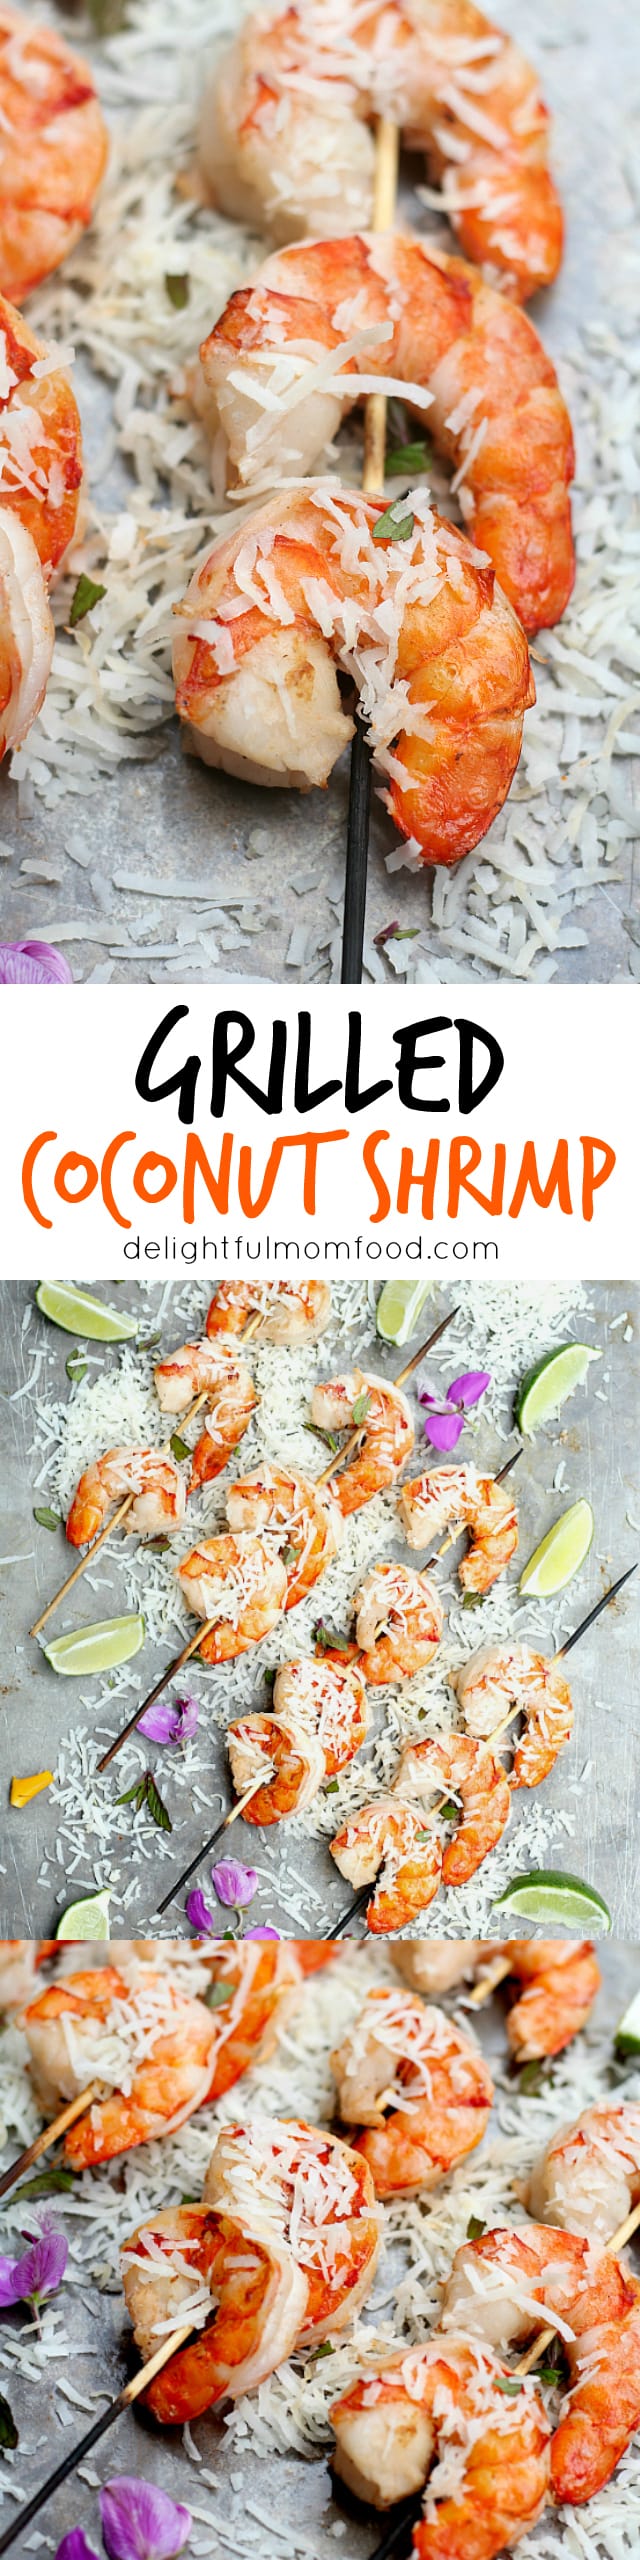 Coconut milk shrimp skewers recipe